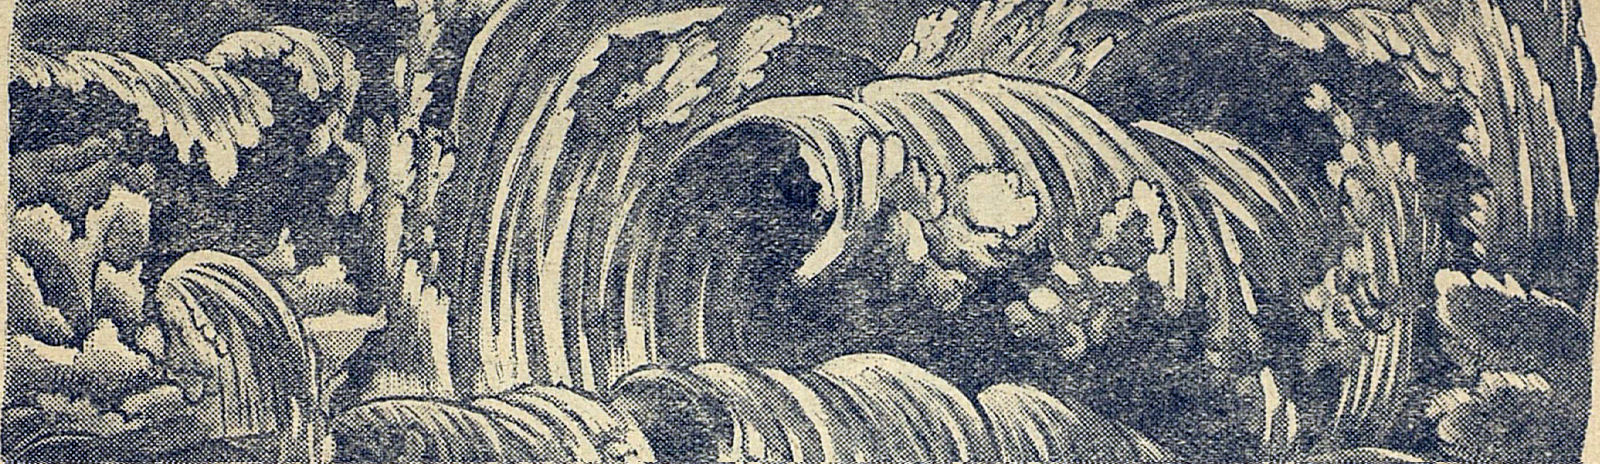 Фоновое изображение Суарна каланиэкках и калайзех нäх